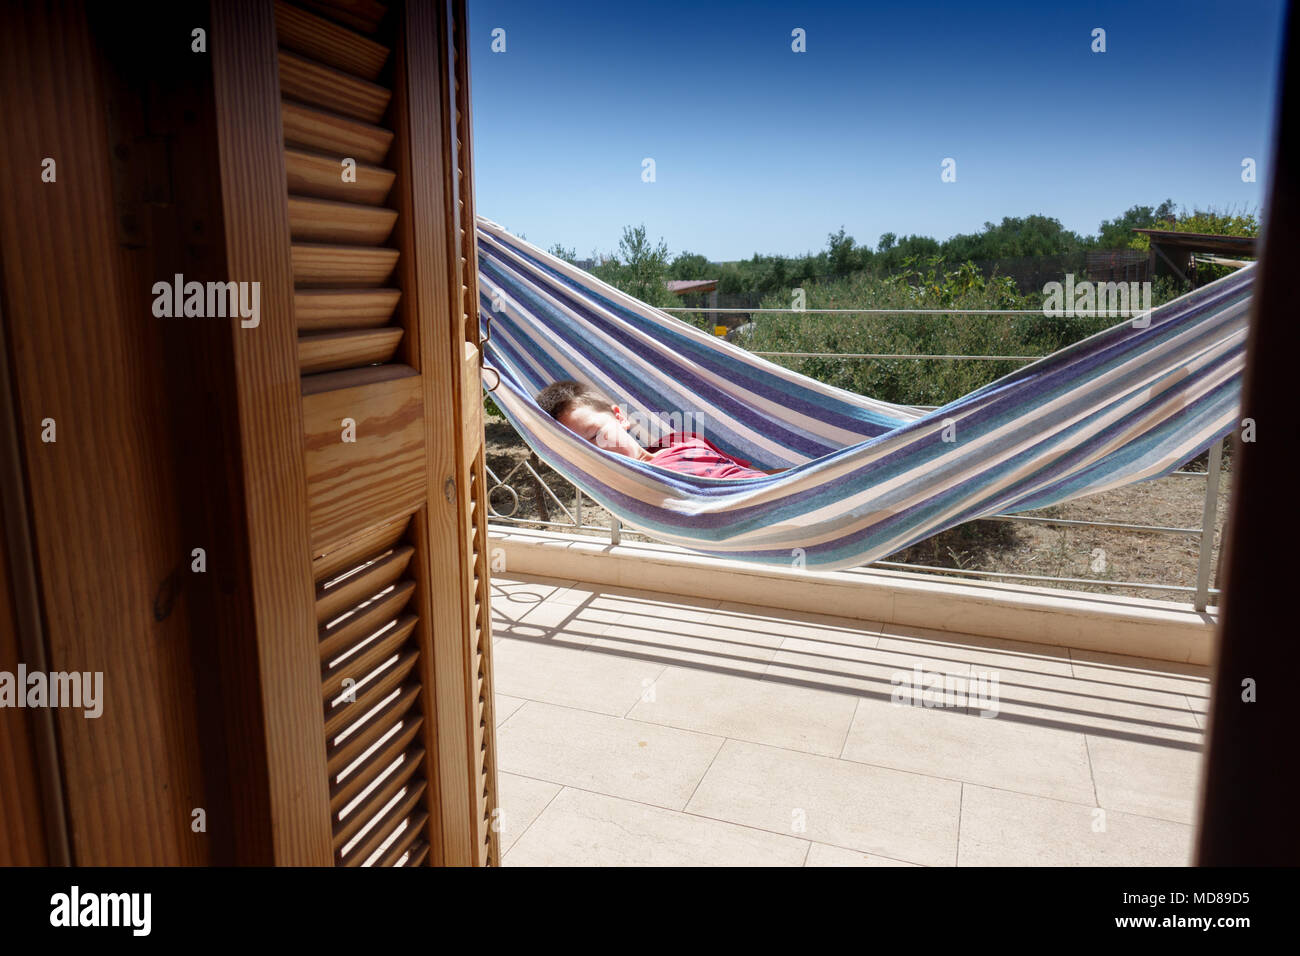 Bambino addormentato in amaca sulla veranda della casa, Creta, Grecia Foto Stock